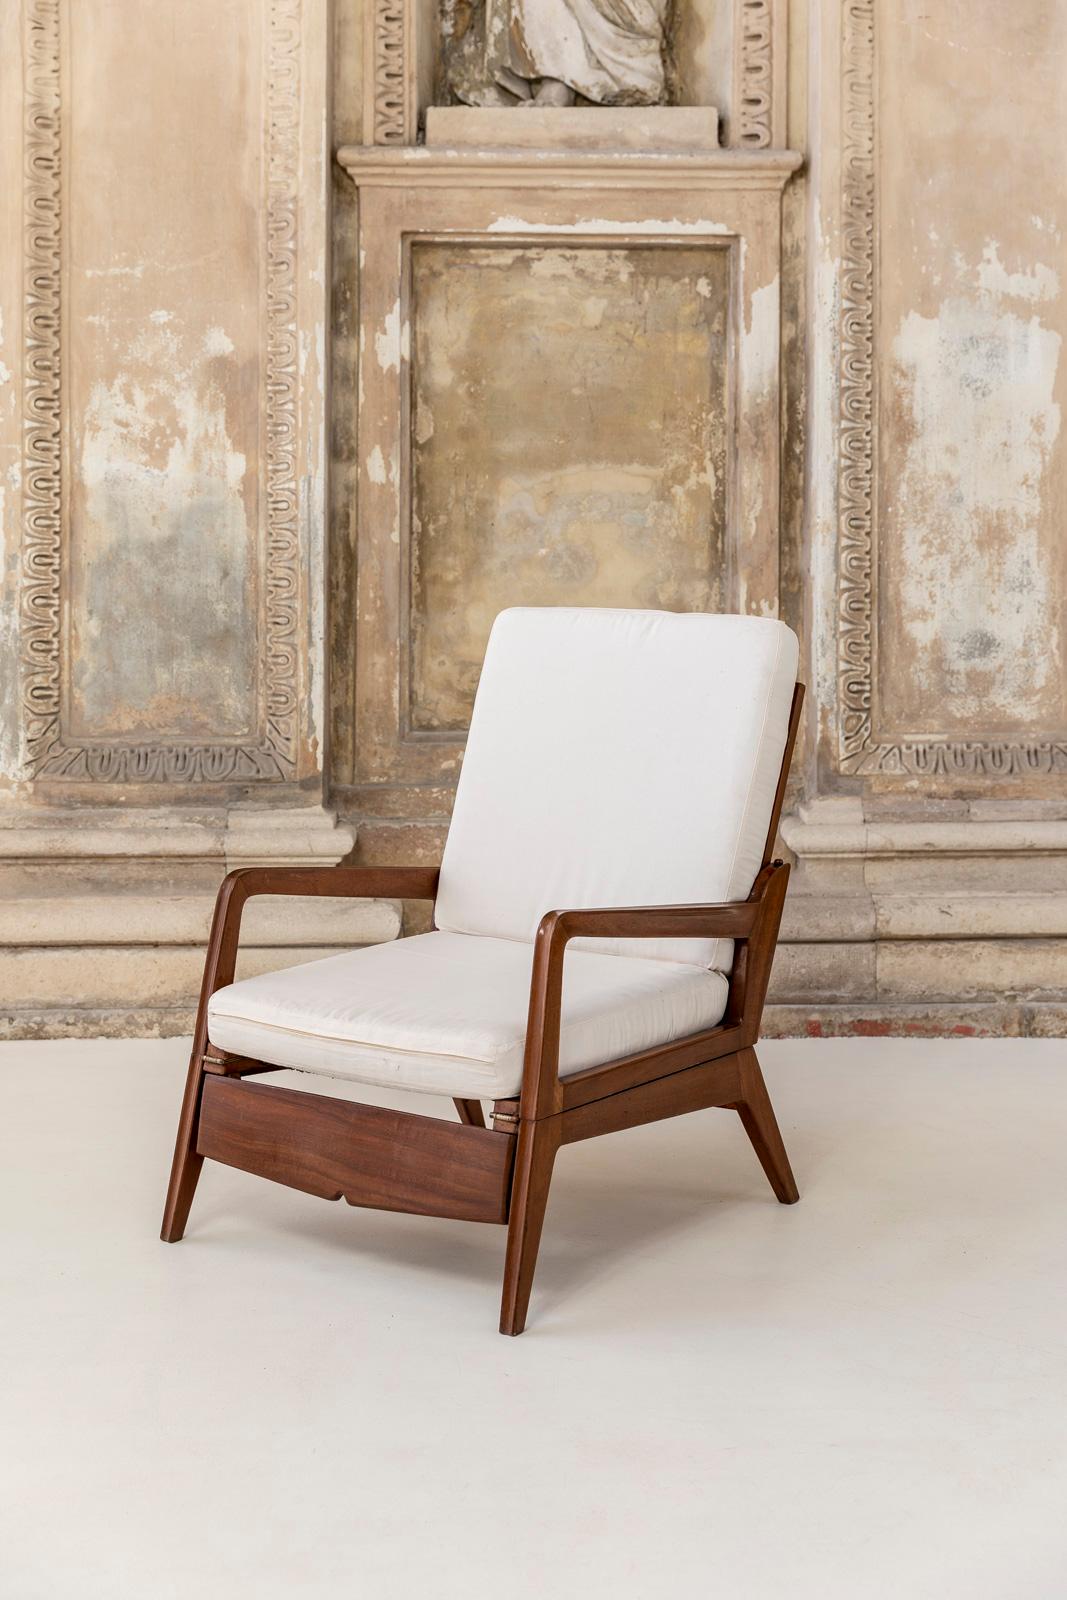 Dieser Sessel kann leicht vom Sessel zum Triclinium umgewandelt werden. Ausgestattet mit weißem Sitzkissen.
Solide Struktur aus Holz und perfekte Bedingungen. 

Maße in geöffnetem Zustand: 120 cm (B) x 78 cm (T) x 42 (H mit Kissen).